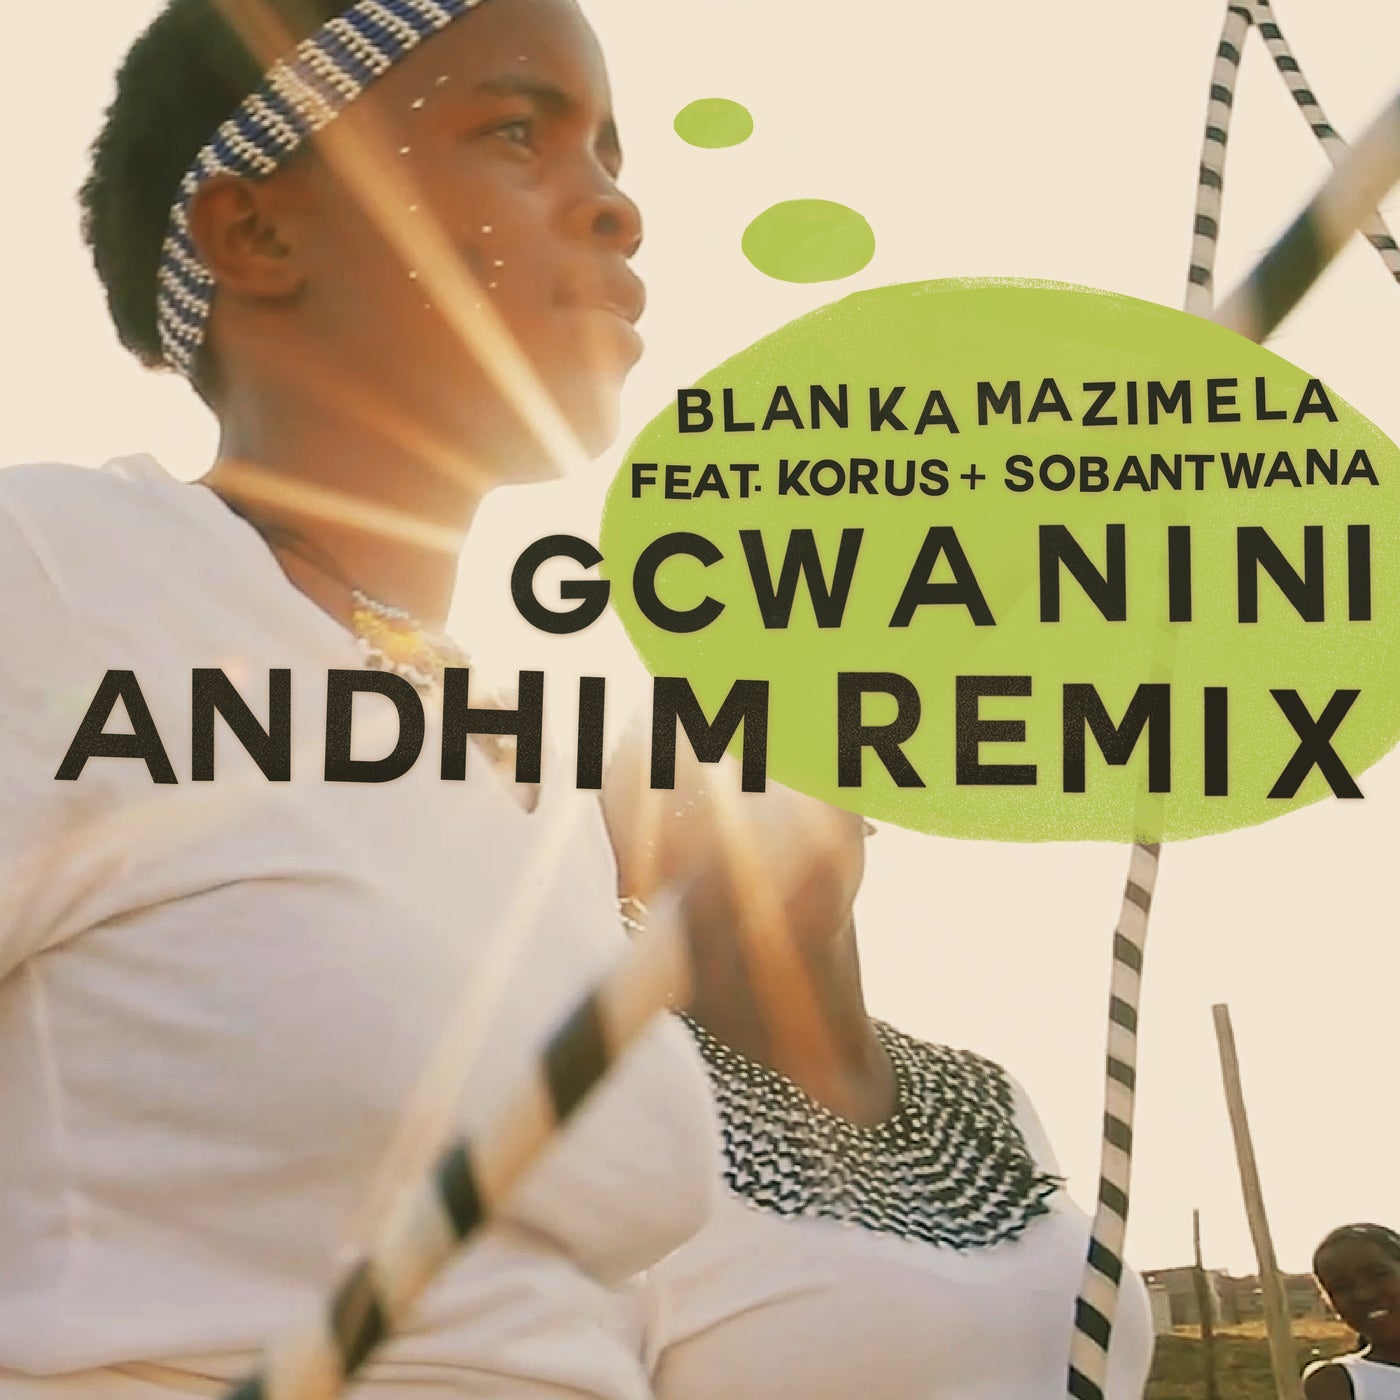 Gcwanini (Andhim Remix)